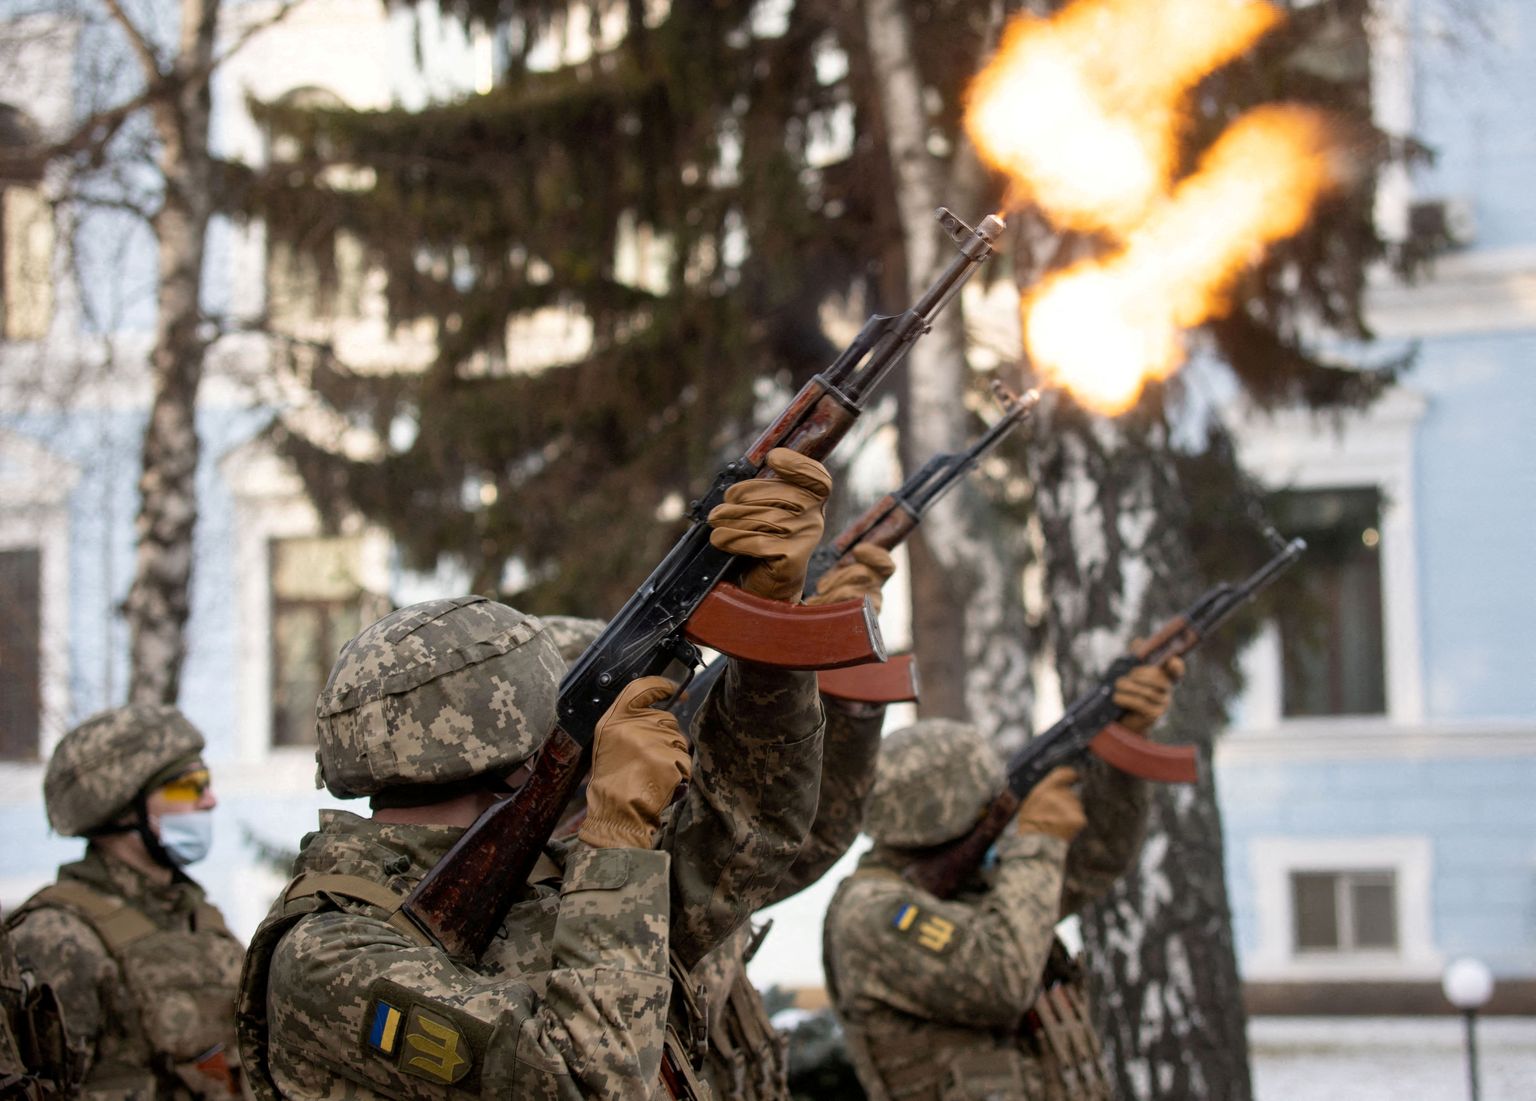 Ukraina teenistujad langenud sõduritele austust avaldamas eelmisel nädalal Kiievis. Pildil olevad sõdurid pole seotud kõnealuse juhtumiga.